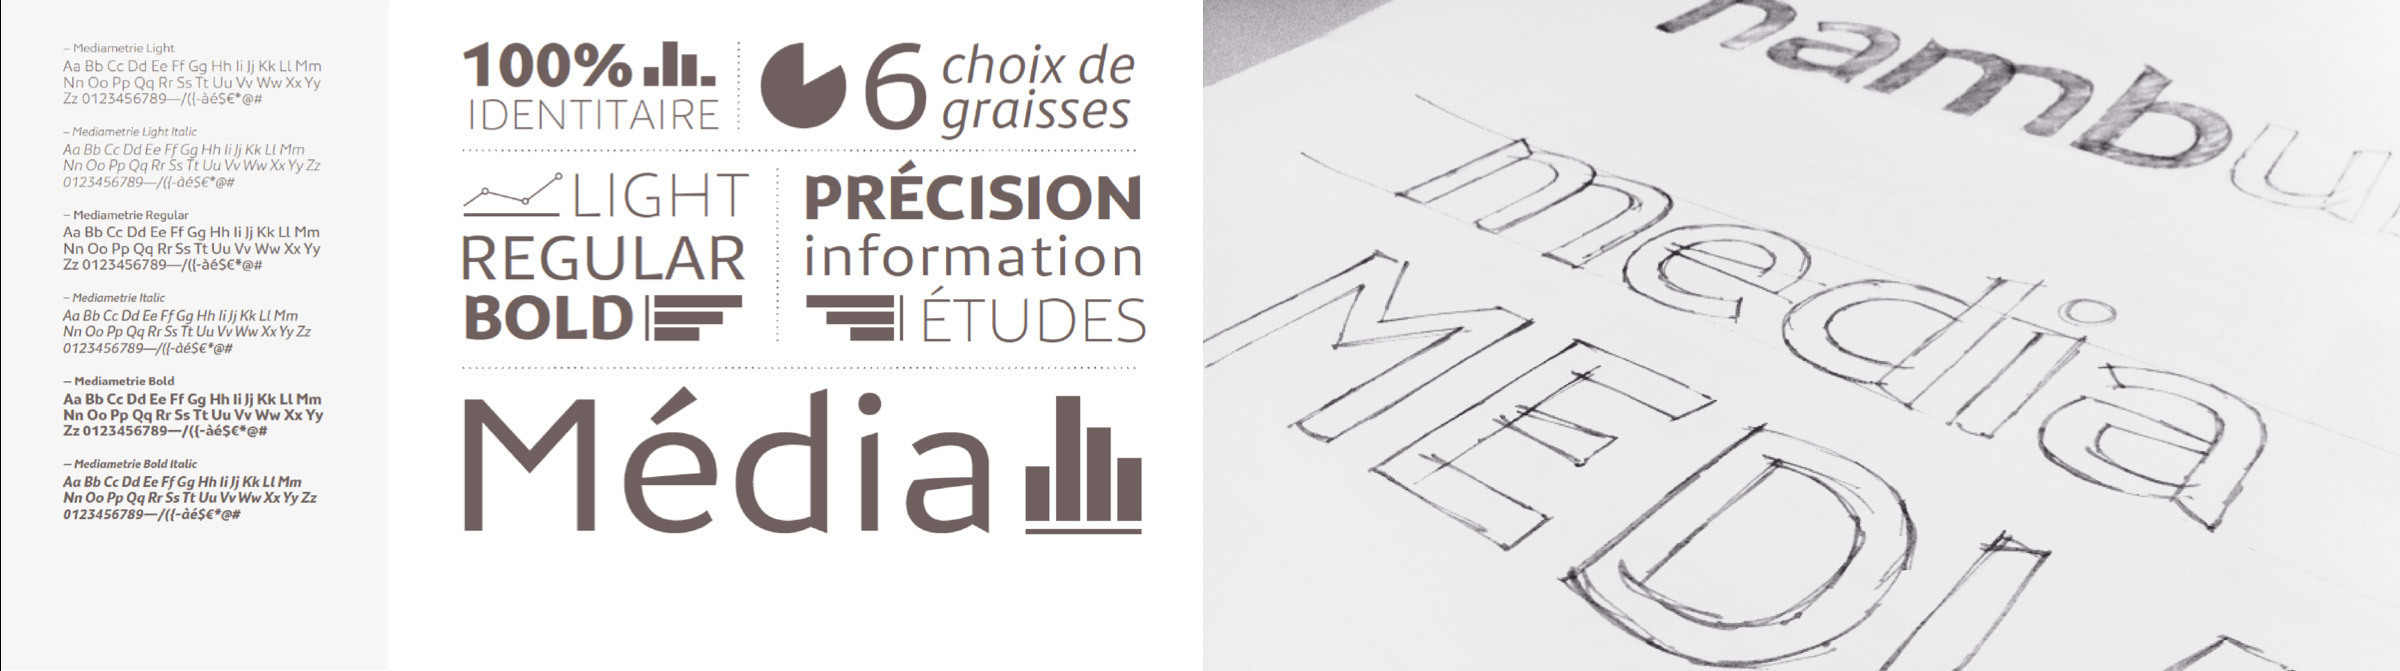 Bespoke typeface for Médiamétrie. © 4uatre